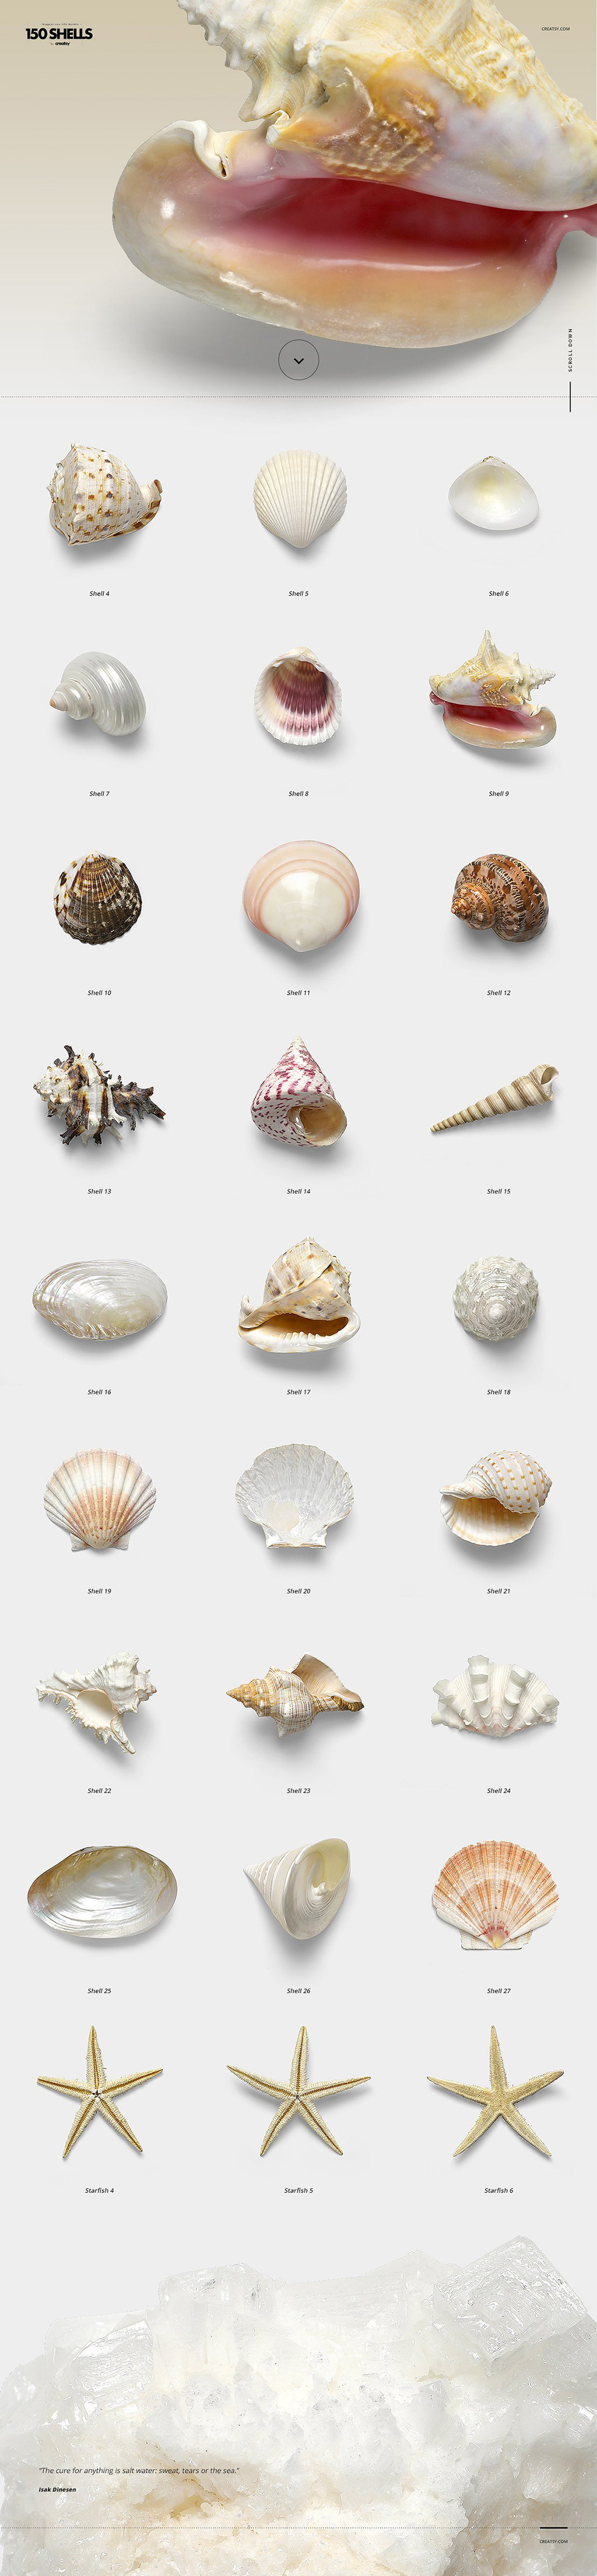 150个贝壳海螺合集超高像素透明背景免抠素材Conch co